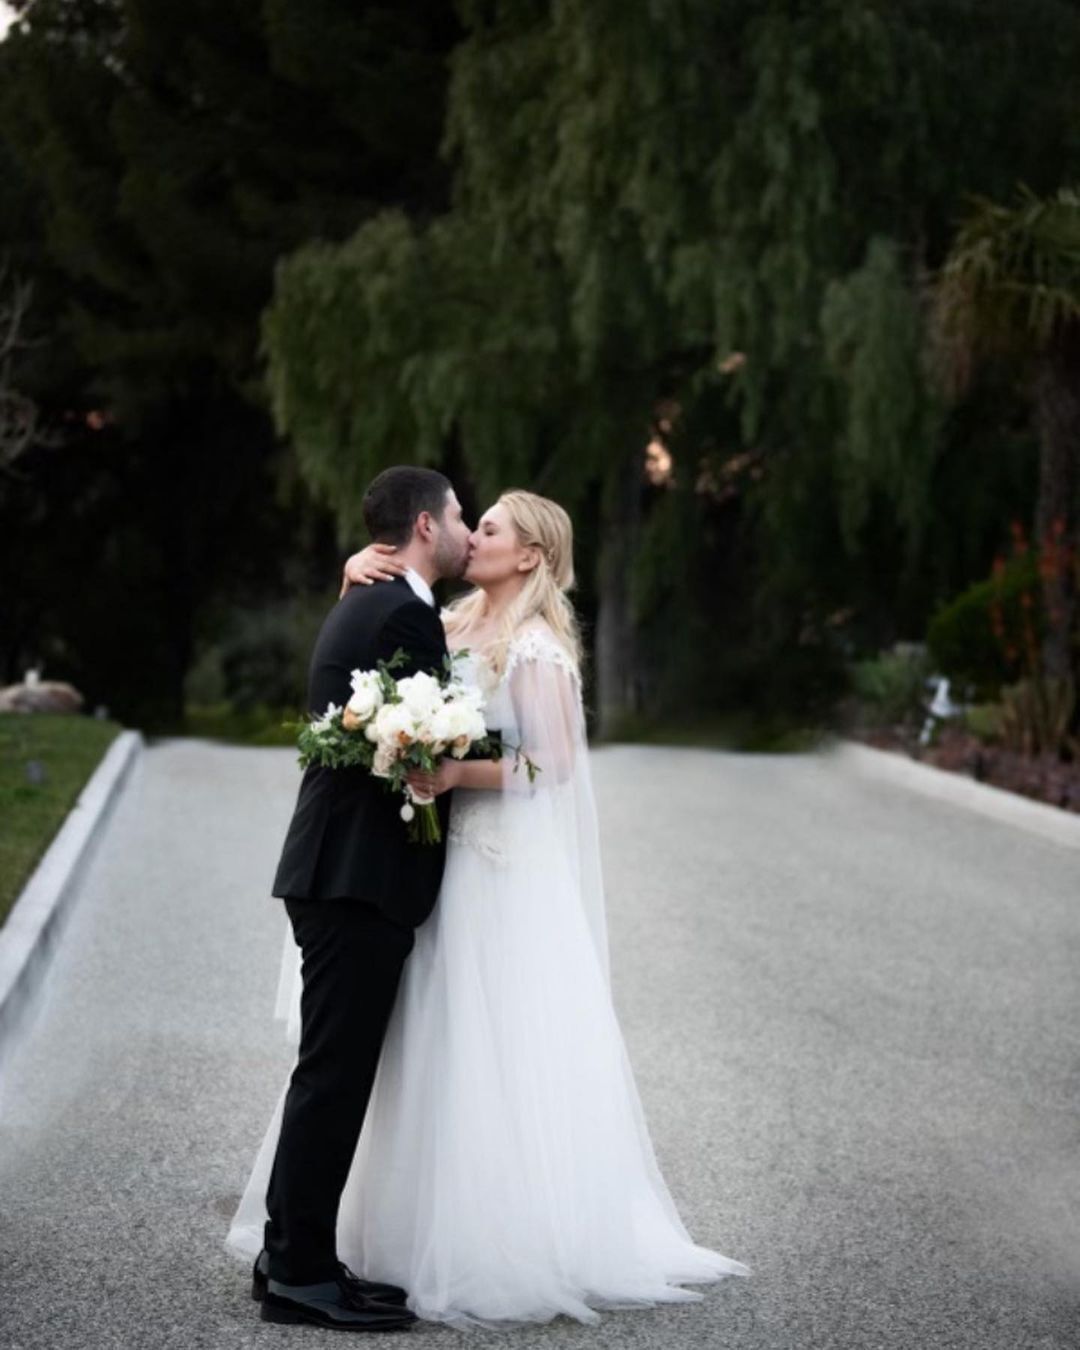 Звезда Голливуда Эбигейл Бреслин вышла замуж за уроженца Одессы. Фото со свадьбы